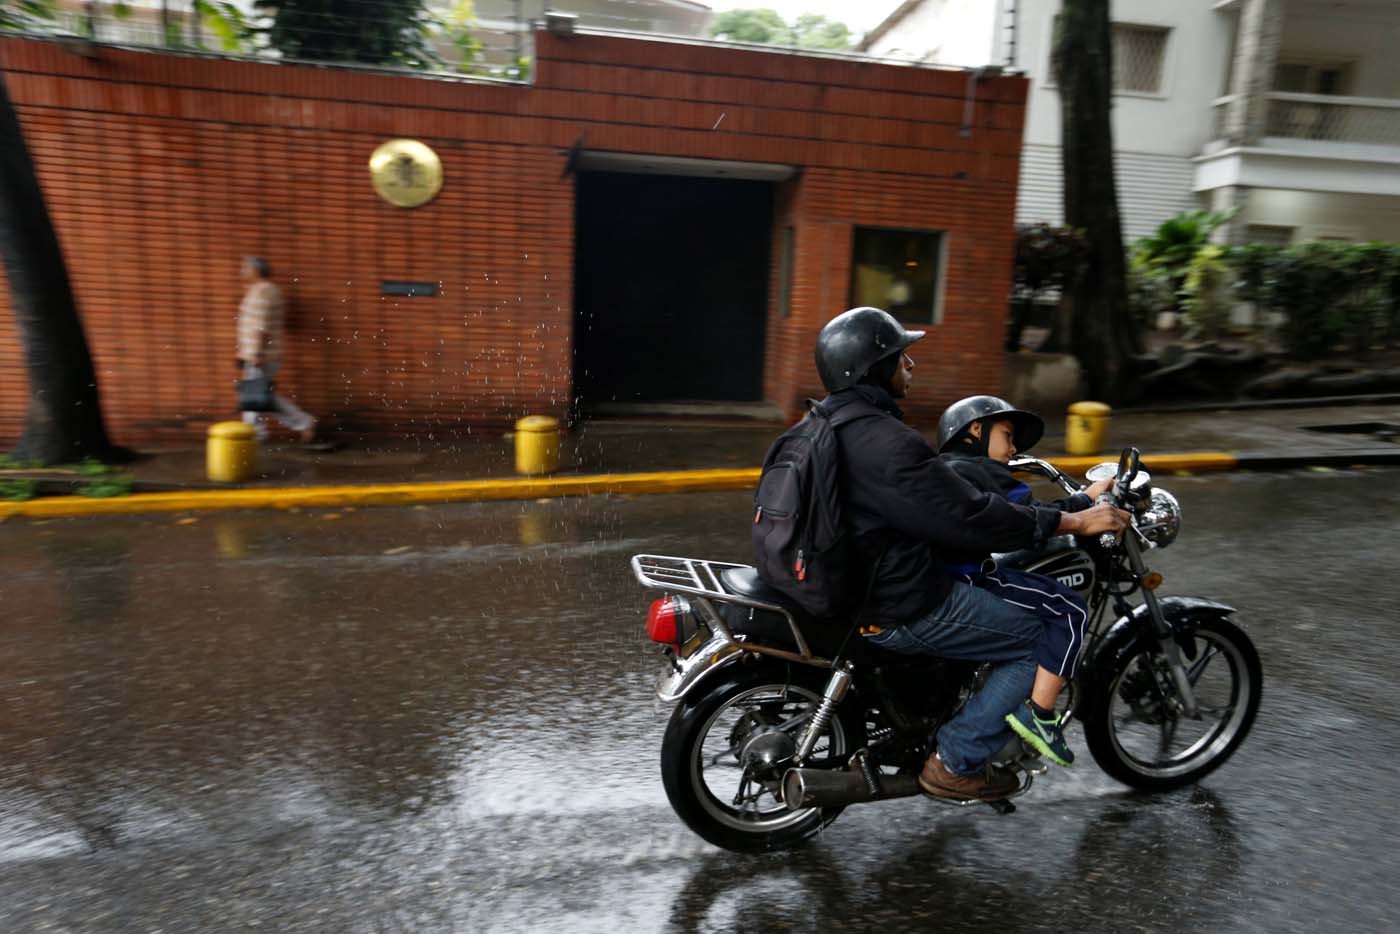 Empleados de la embajada de España siguen secuestrados por el régimen de Maduro #26Oct